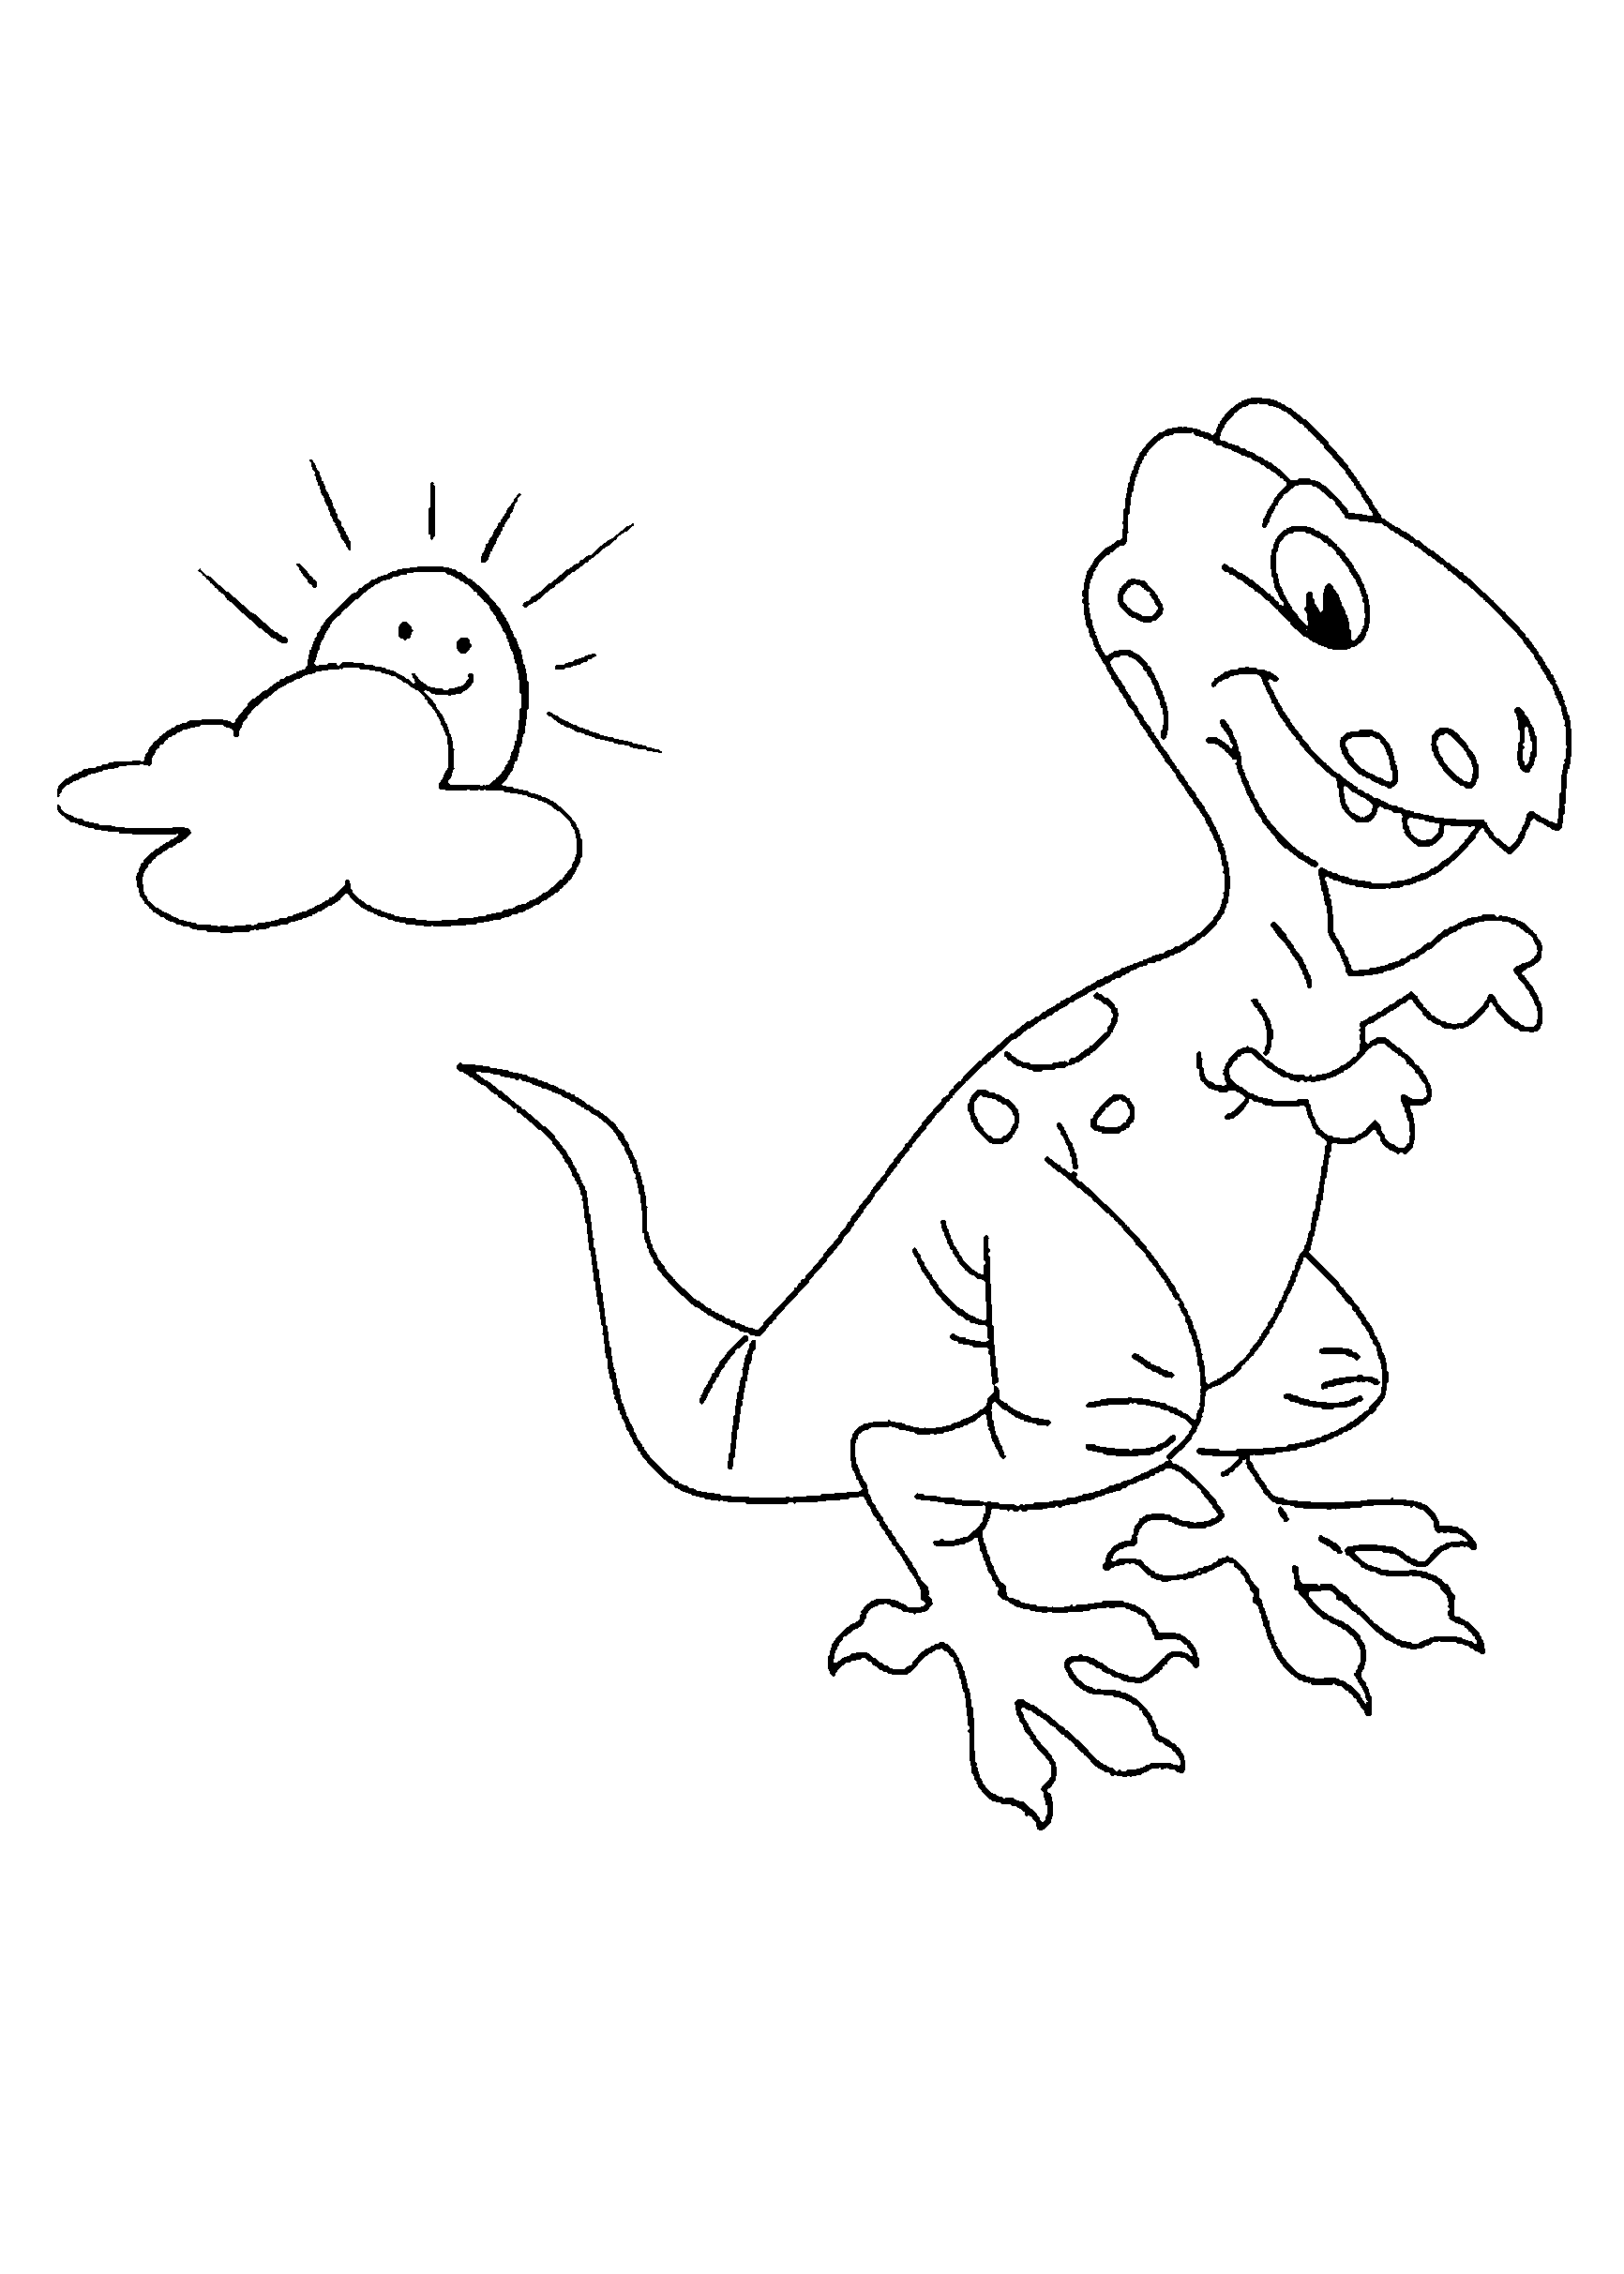 Desenhos de Dinossauros para imprimir e colorir - Só Atividades